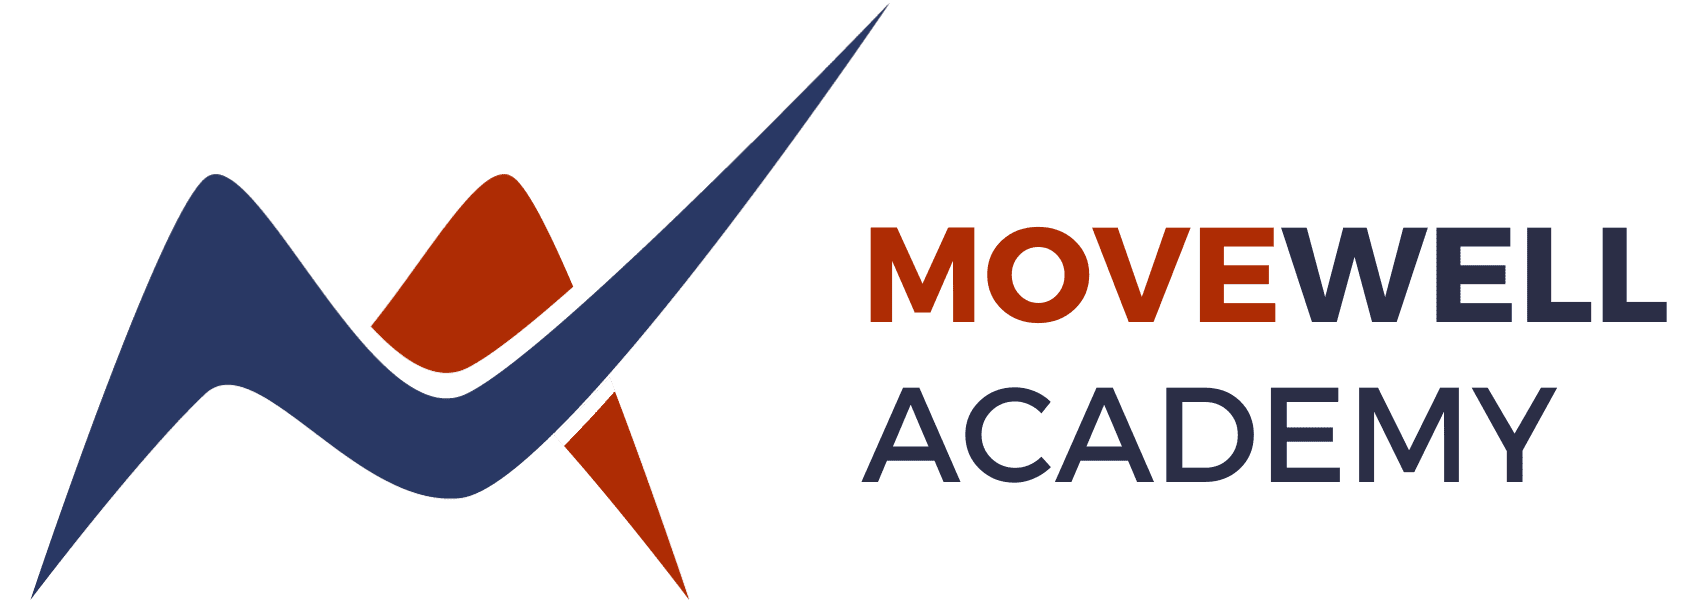 Movewell Academy